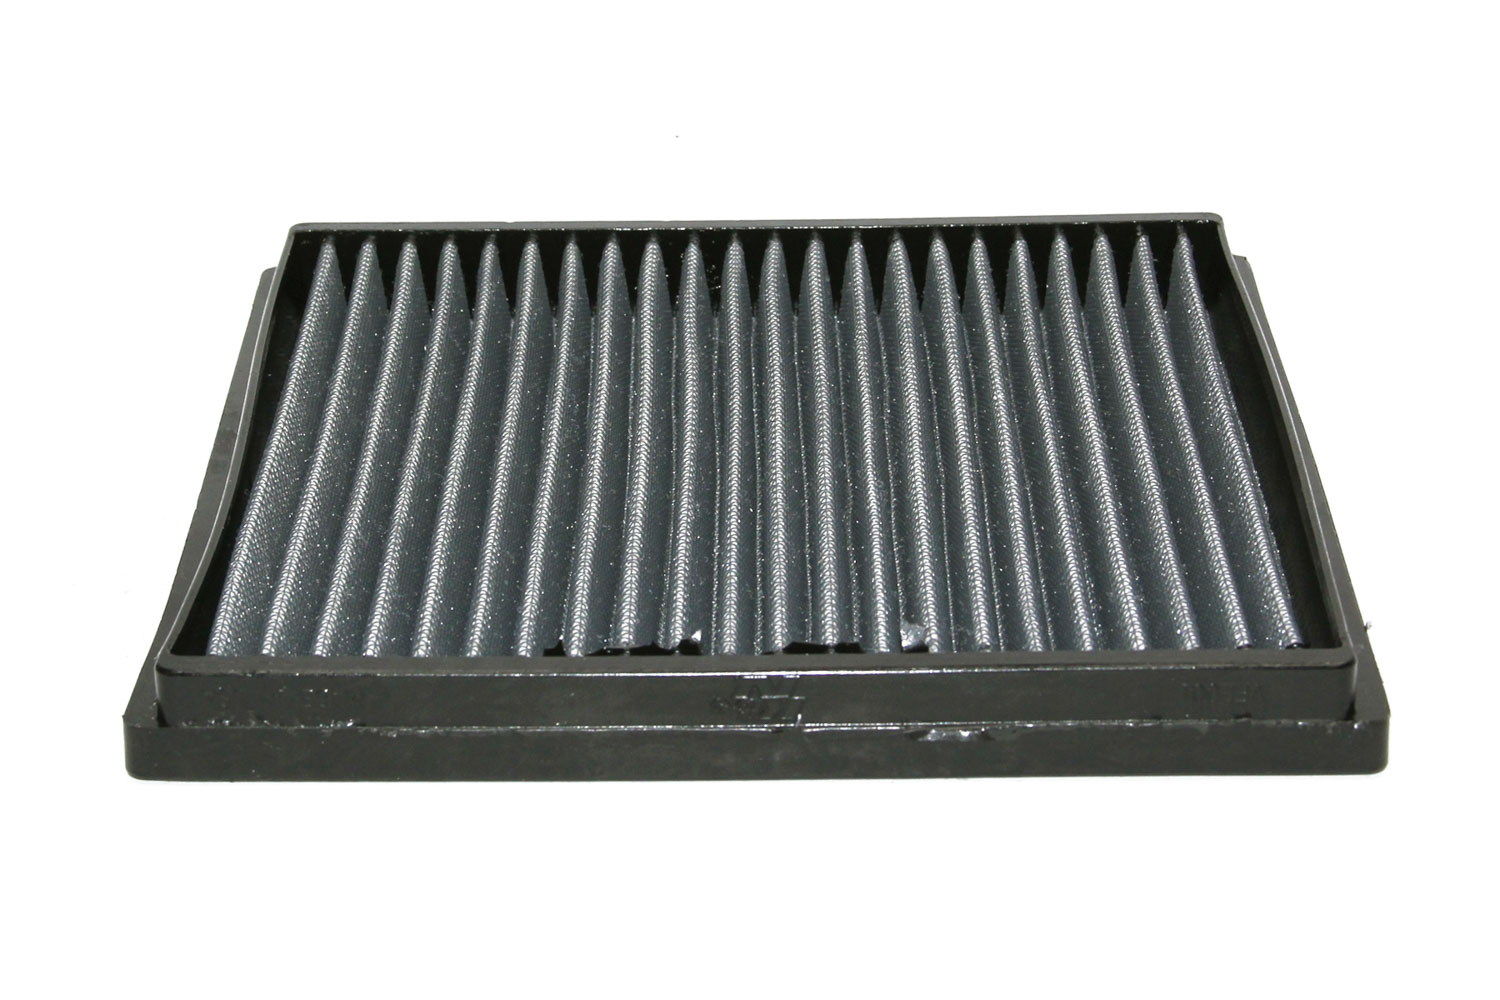 Vf2001 cabin air filter